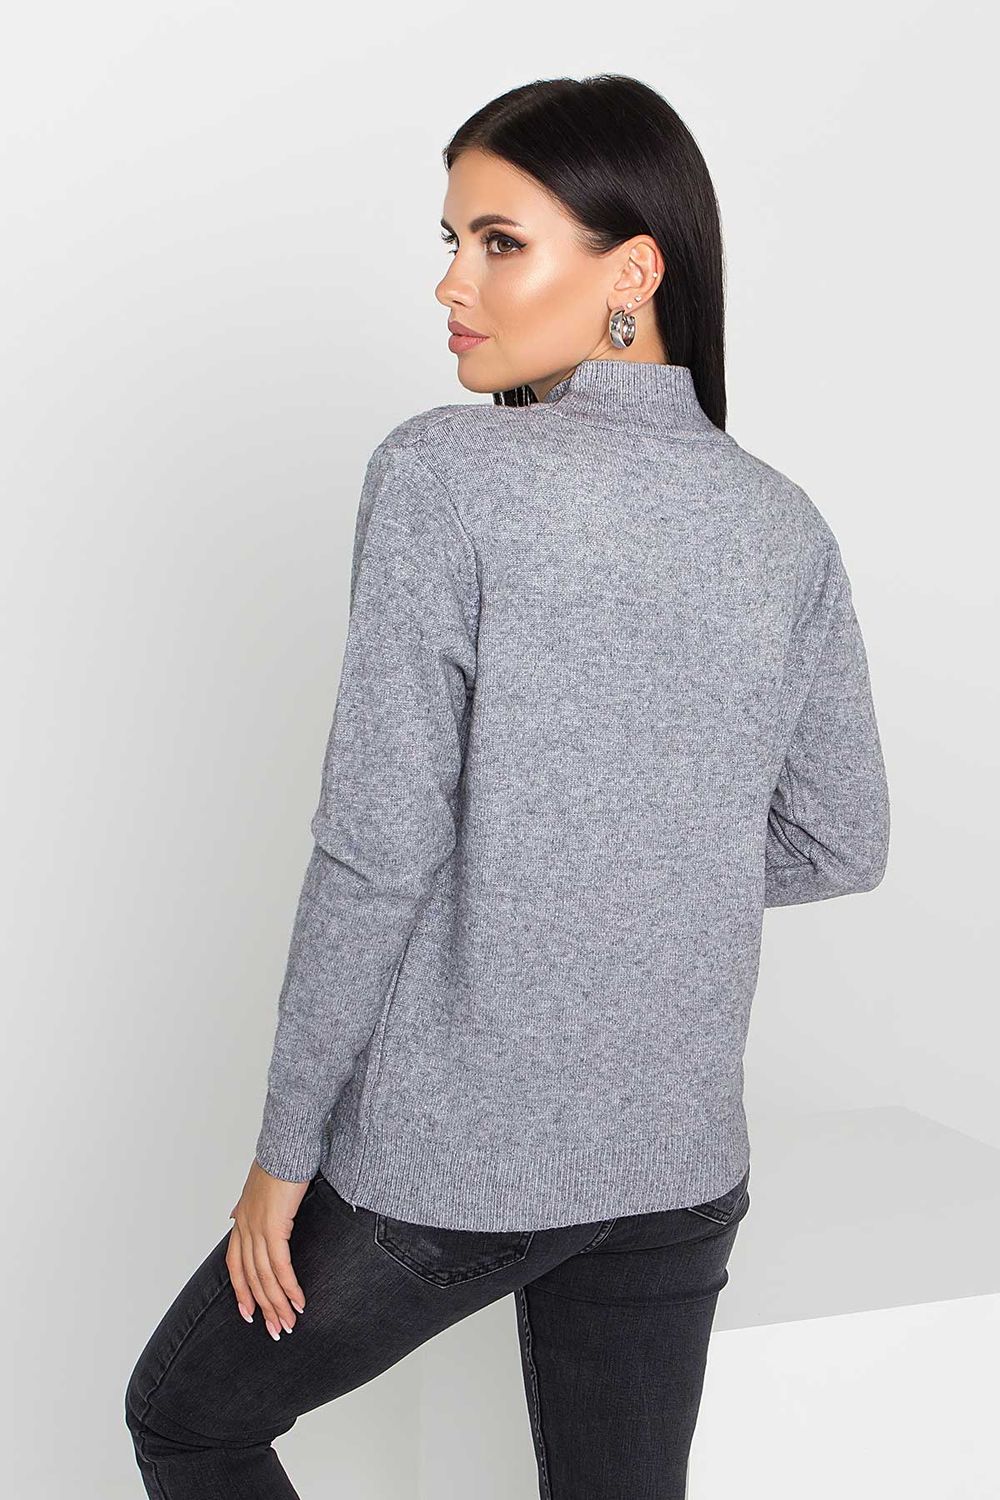 Жіночий в'язаний светр з візерунком коси сірого кольору - фото